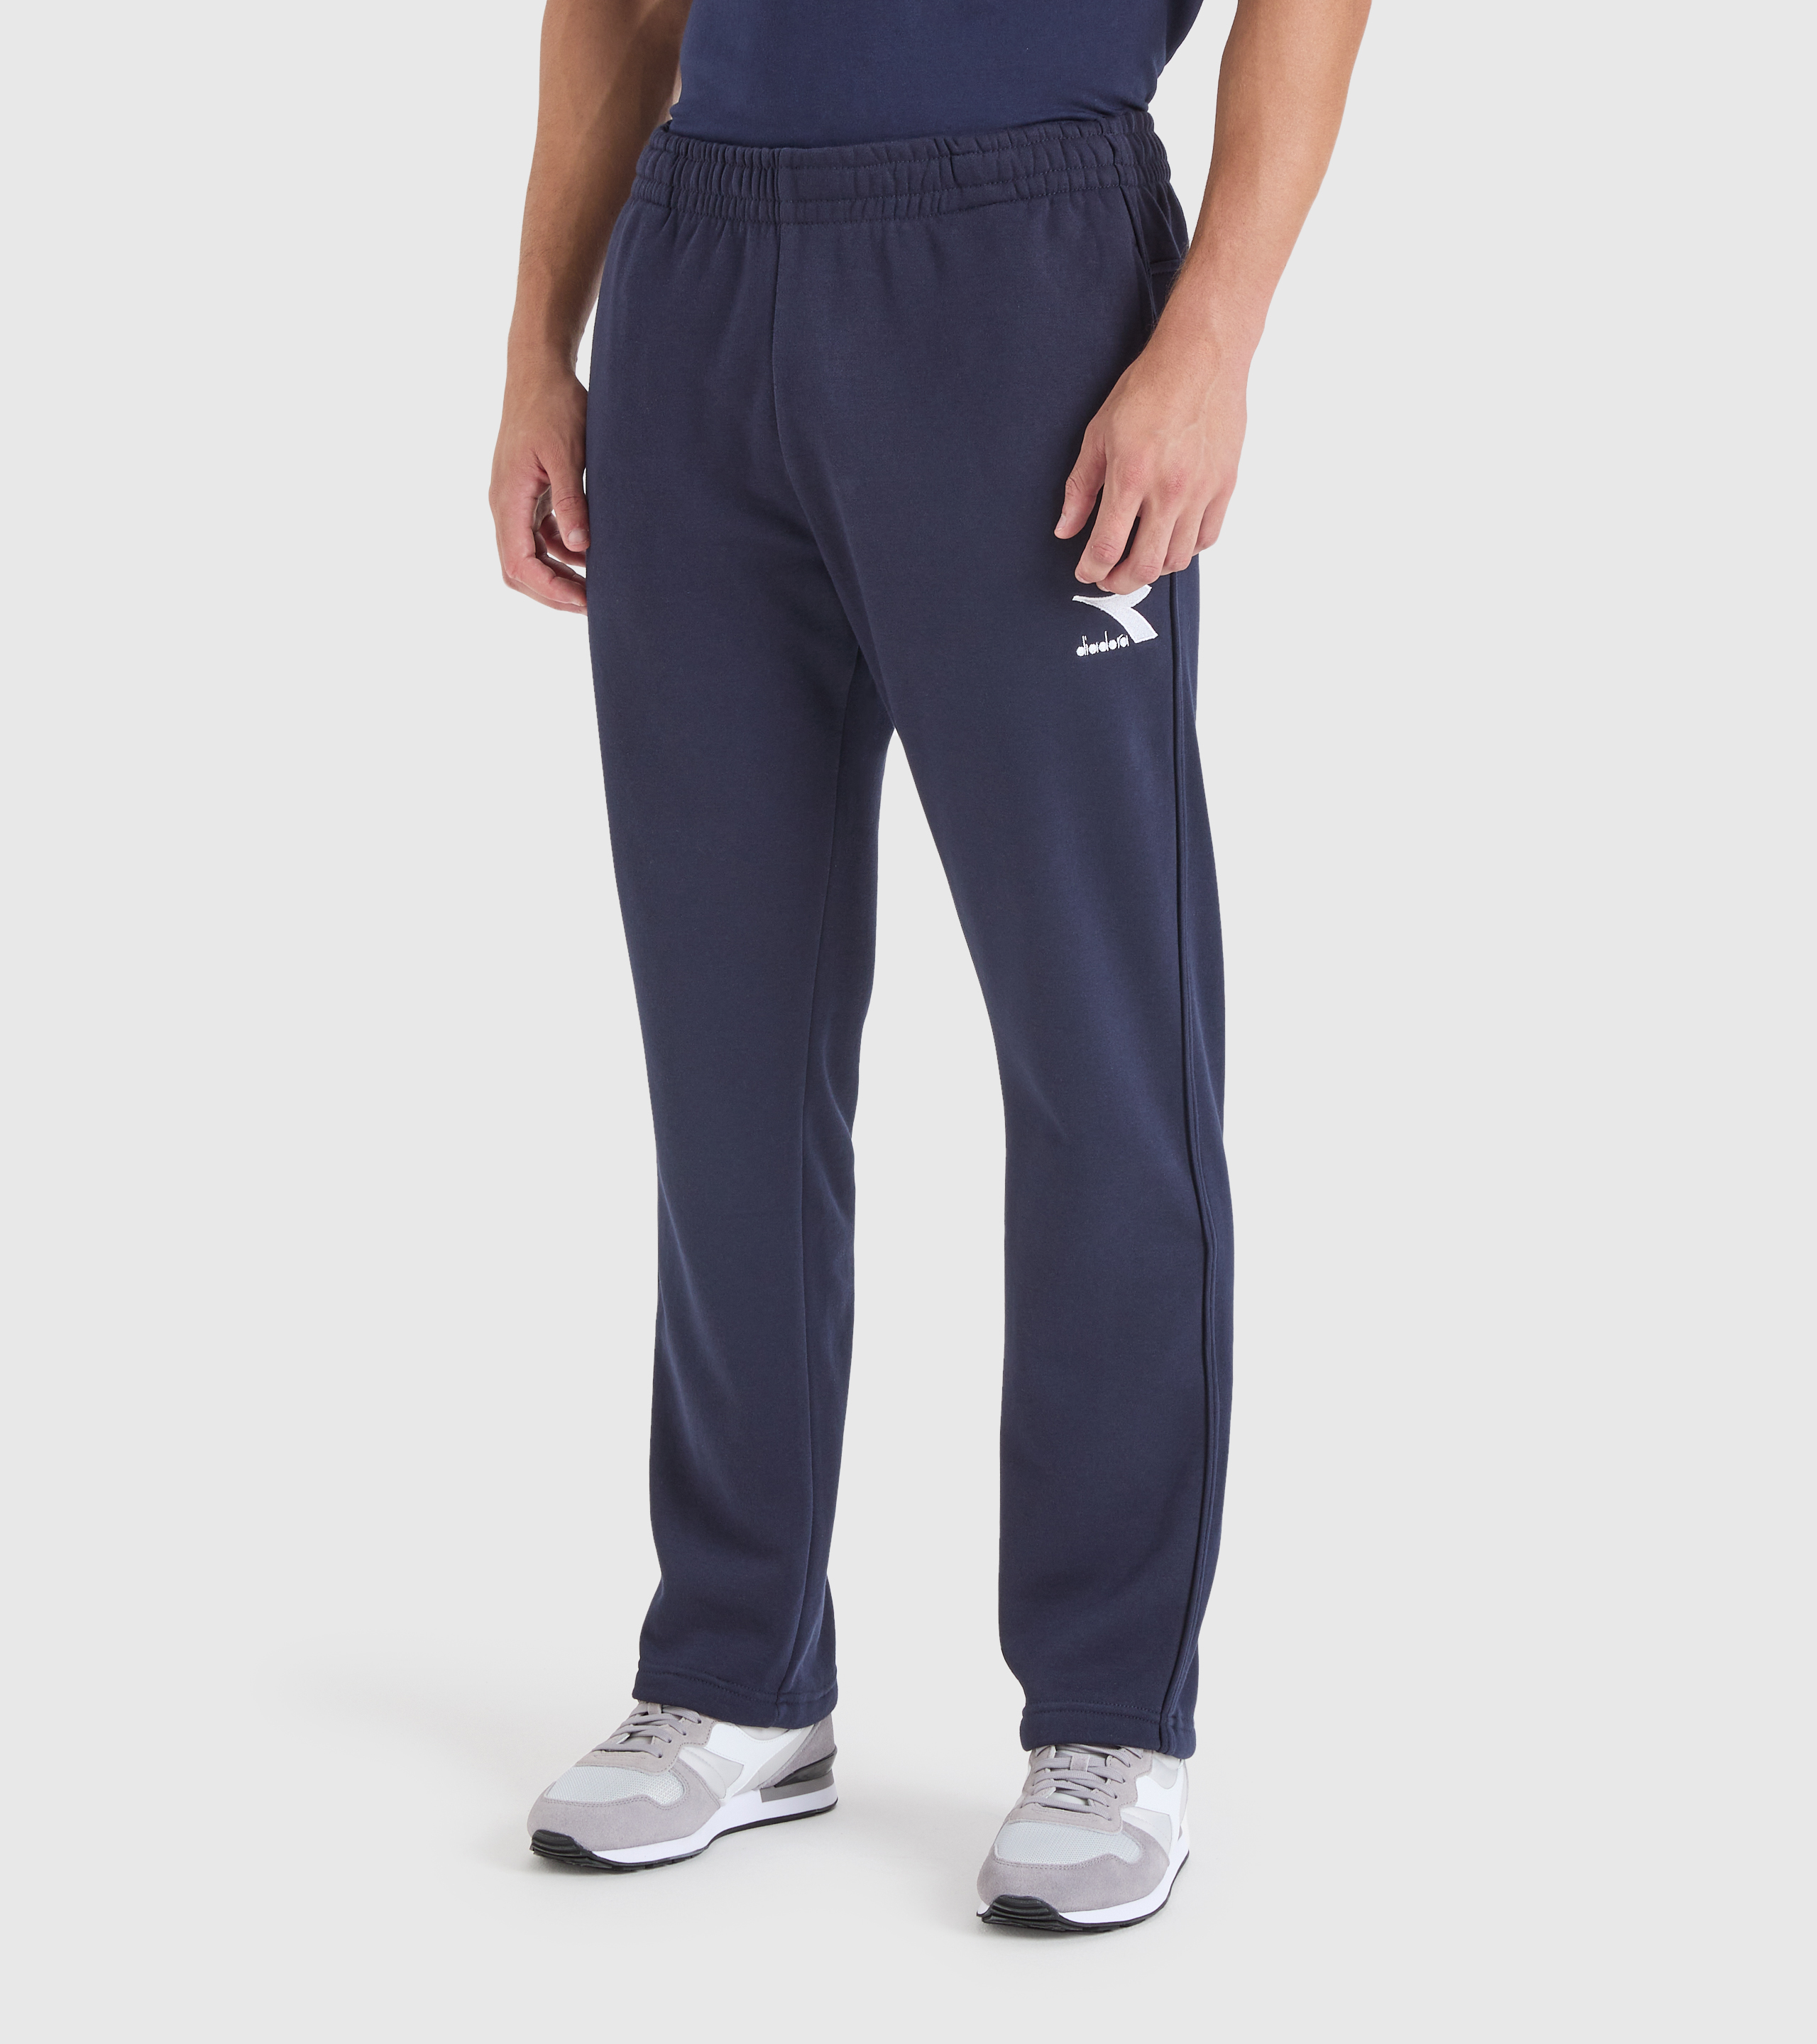 Découvrez la gamme Pantalons sport sélectionnée pour vous ! Un